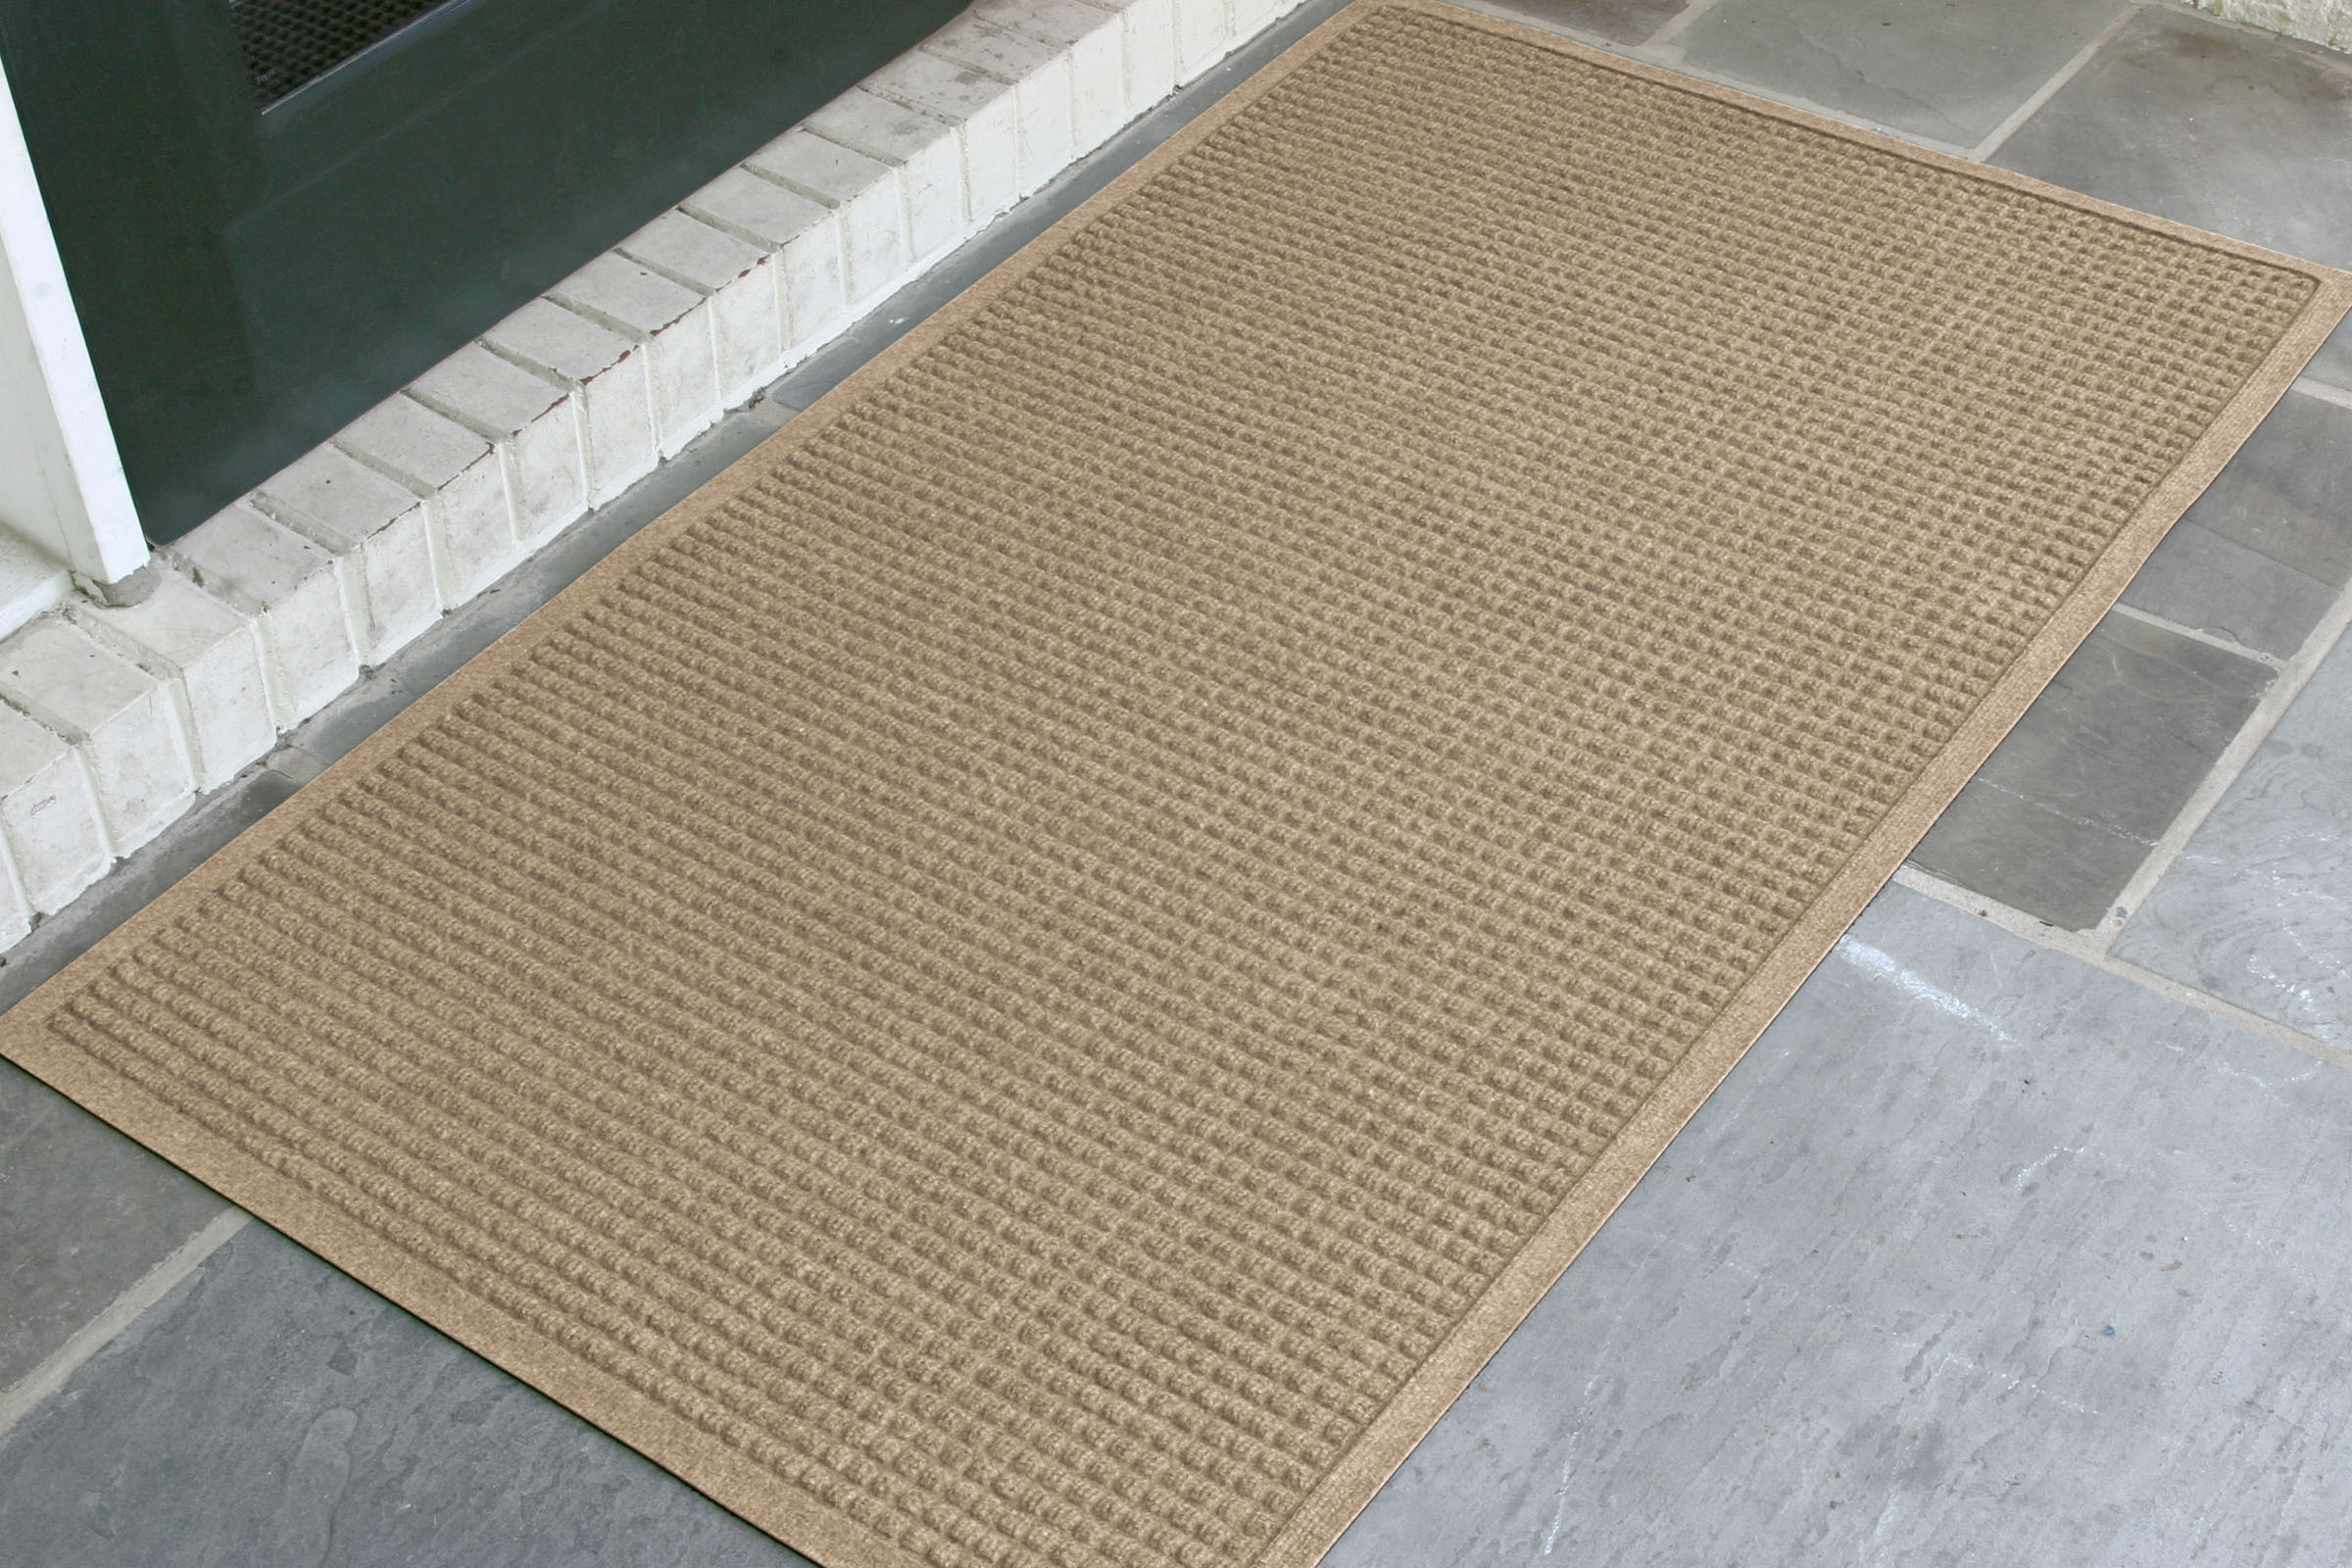 Waterhog Fern Doormat, 2' x 3' - Bordeaux